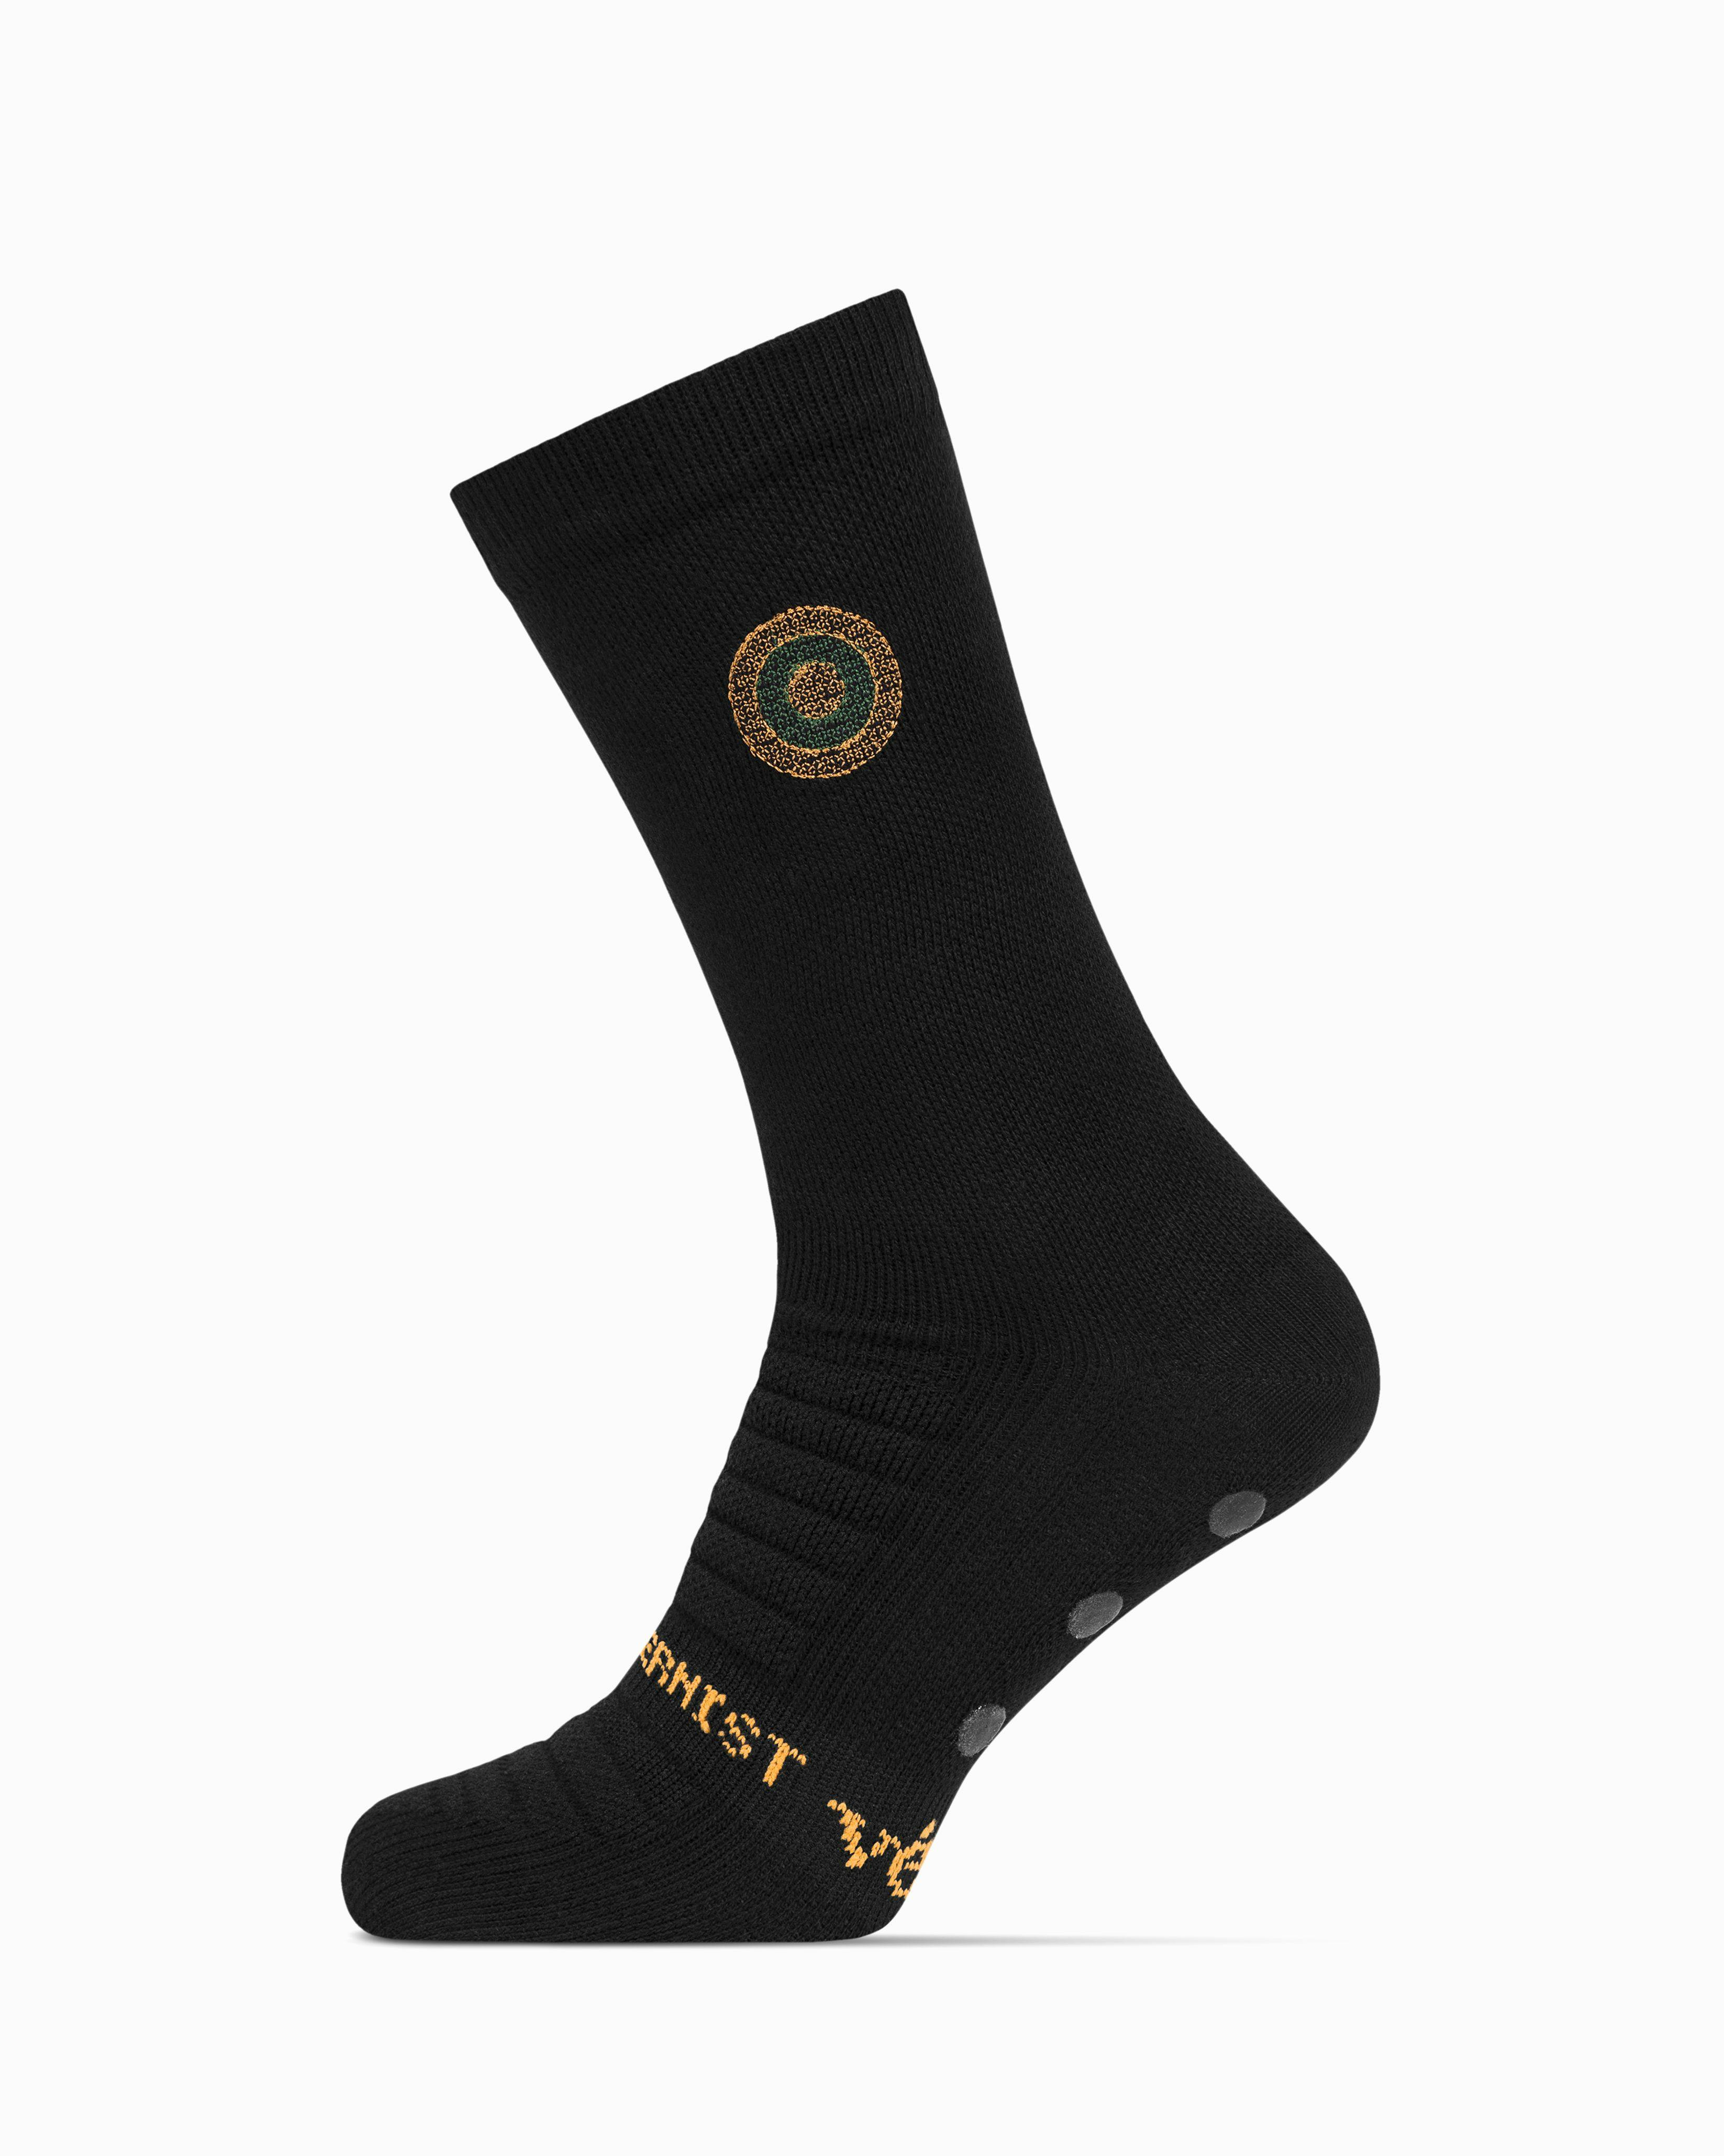 Modernist PremGripp Socks (Black/Parka)